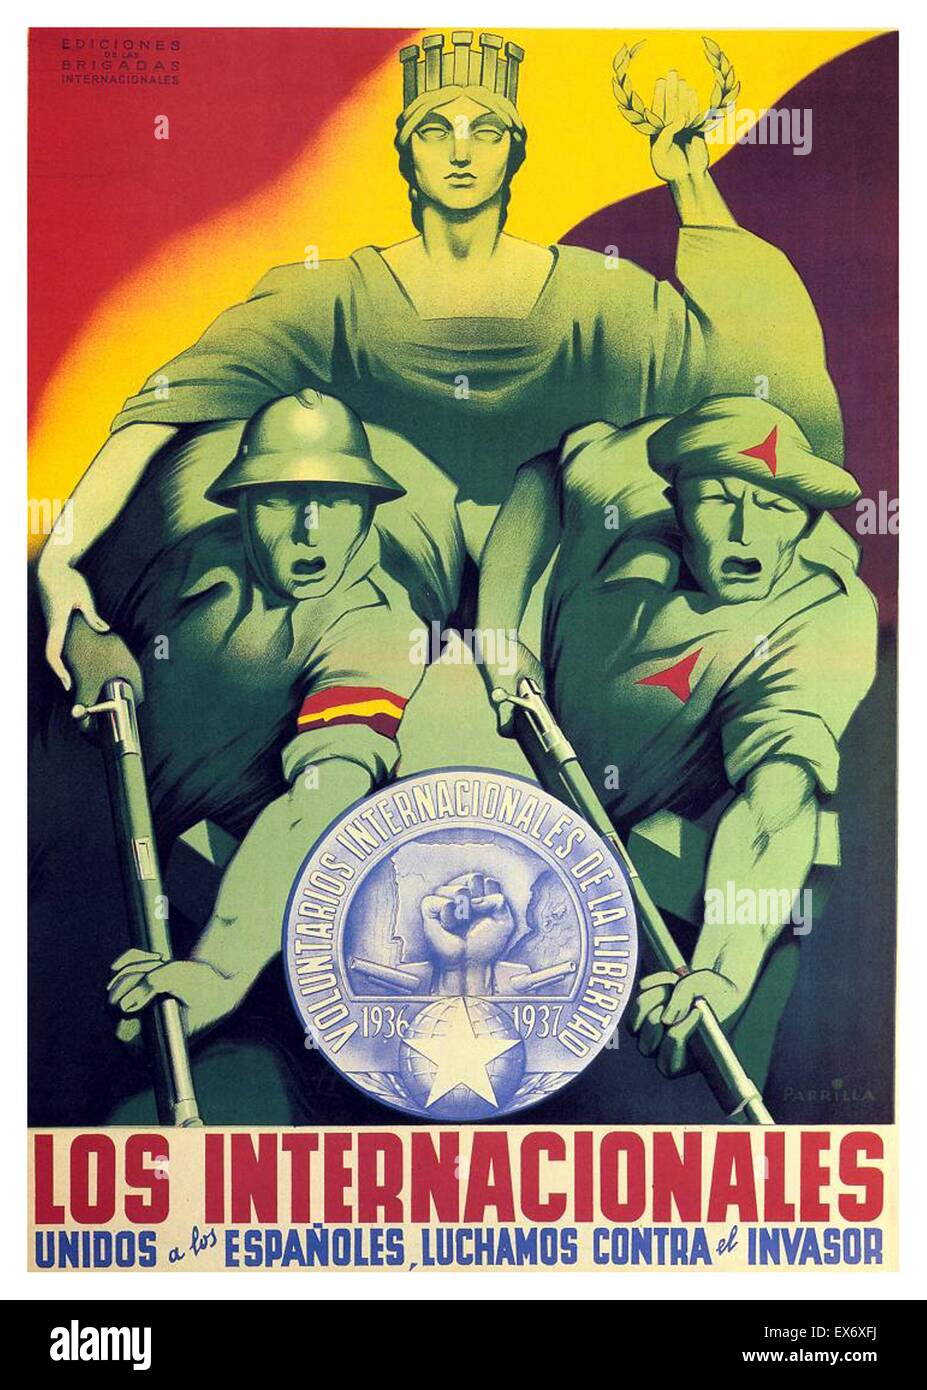 Le Brigate internazionali / Los Internacionales. Le Brigate internazionali uniti con la spagnola, contro la invador. Foto Stock